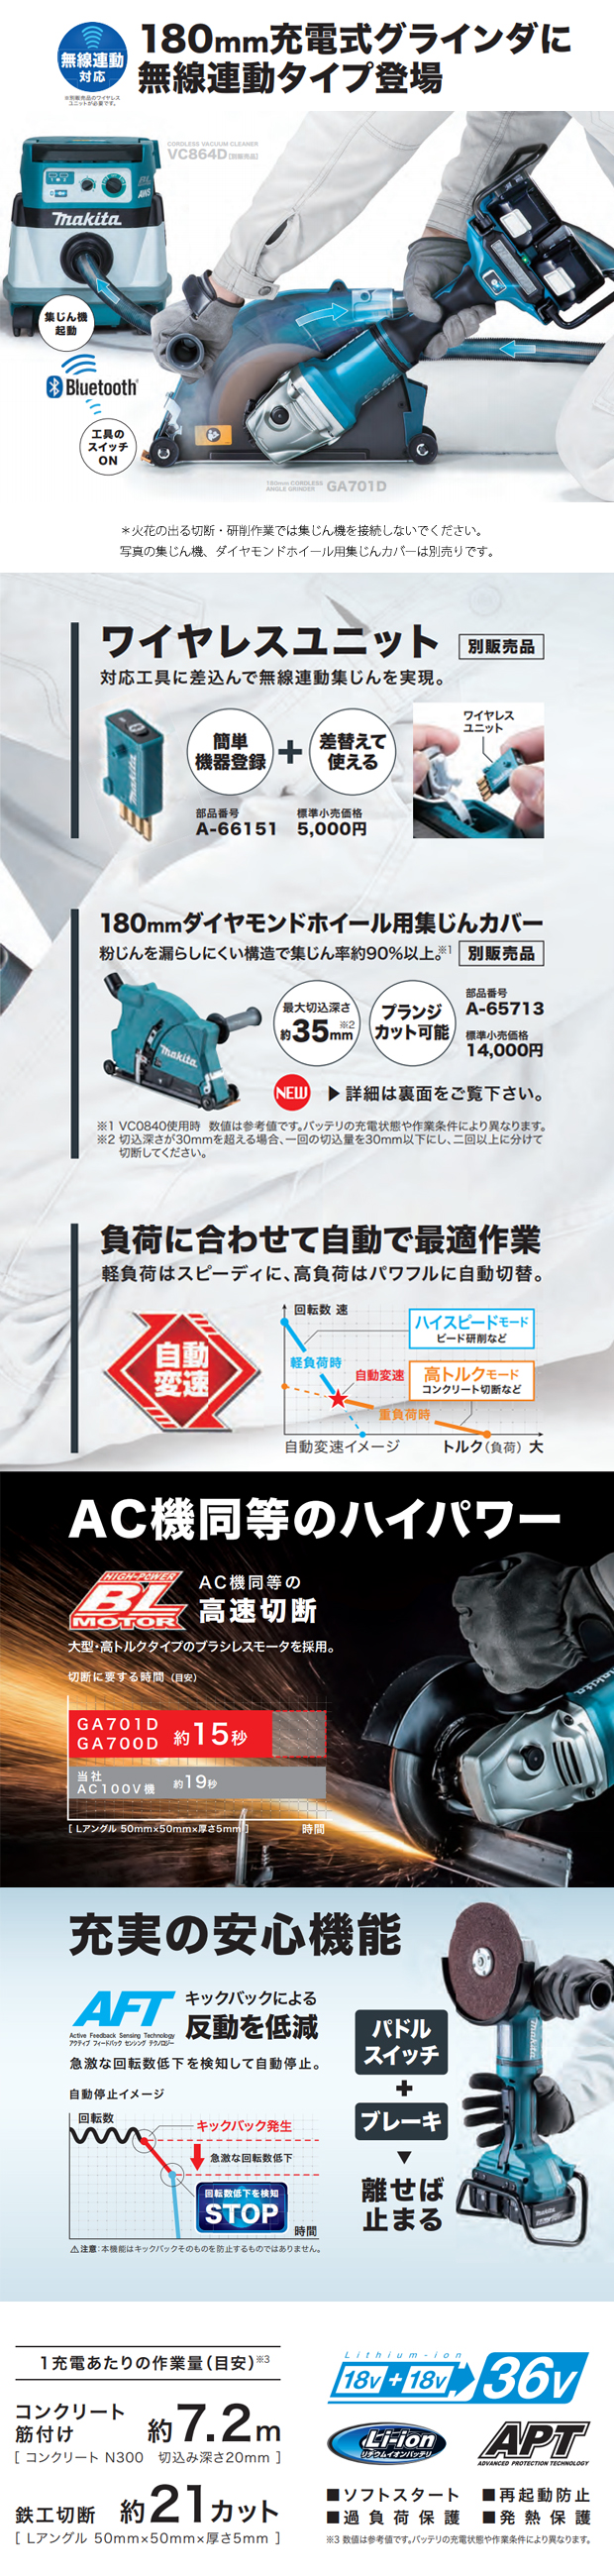 マキタ 180mm 充電式ディスクグラインダ GA701D 電動工具・エアー工具